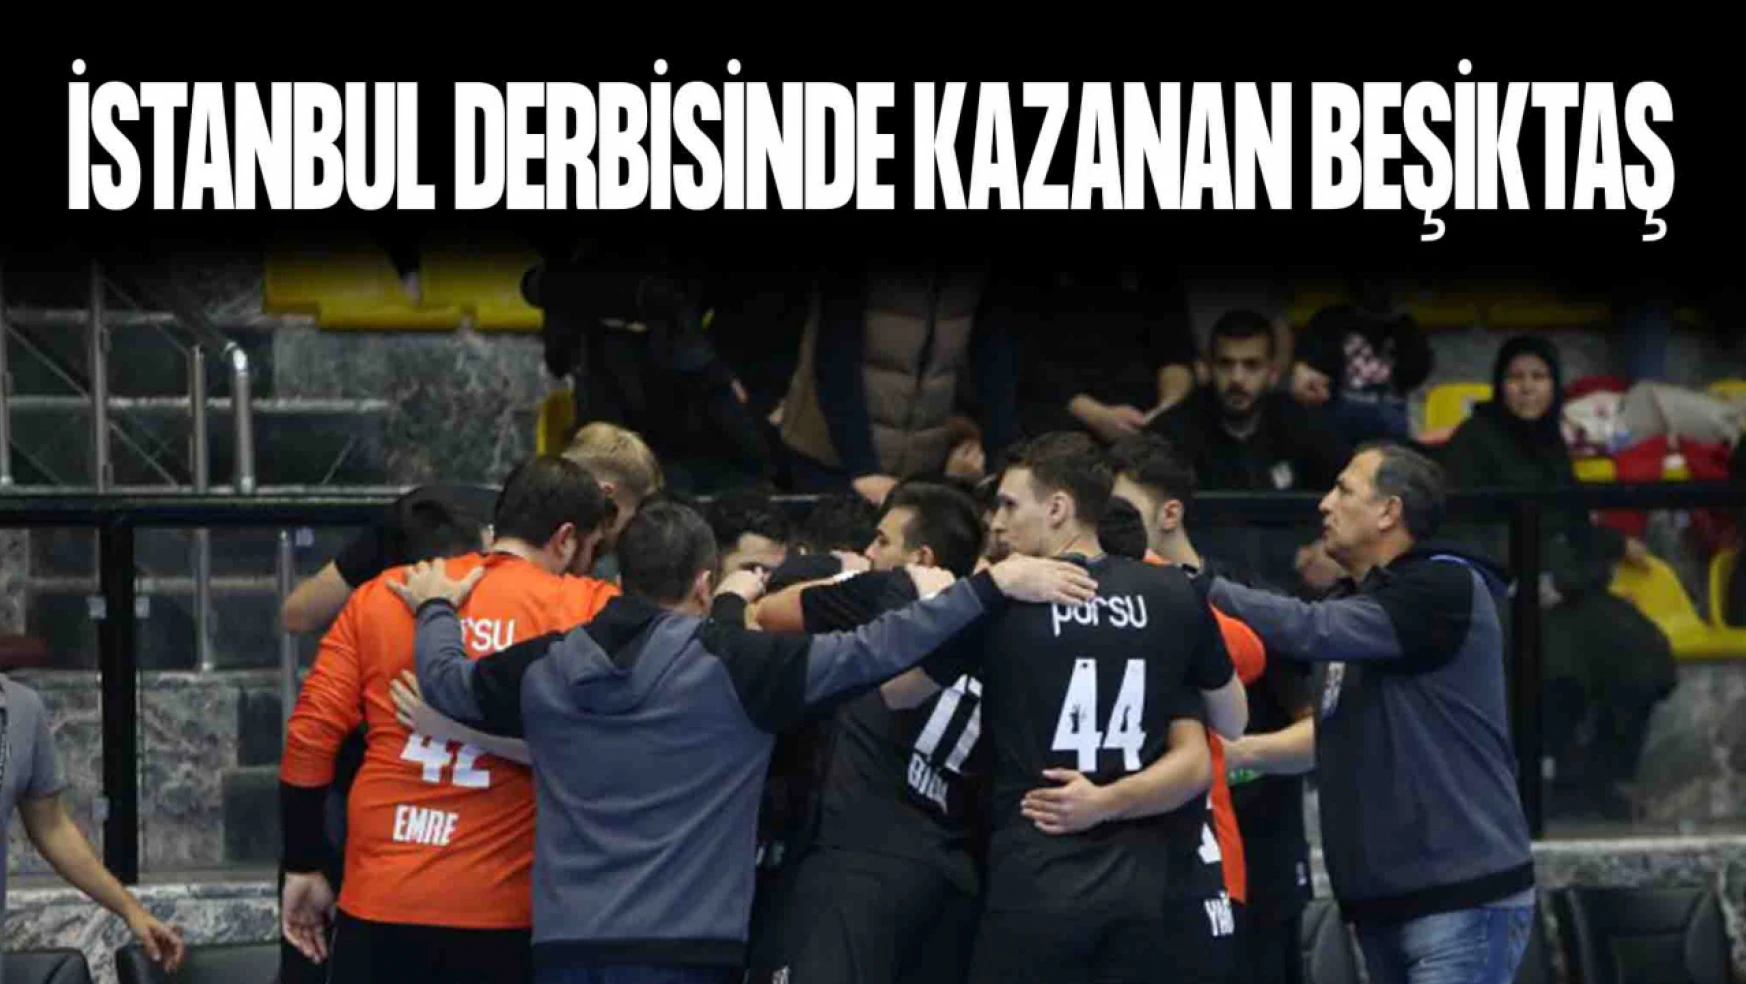 İstanbul Derbisinde Kazanan Beşiktaş